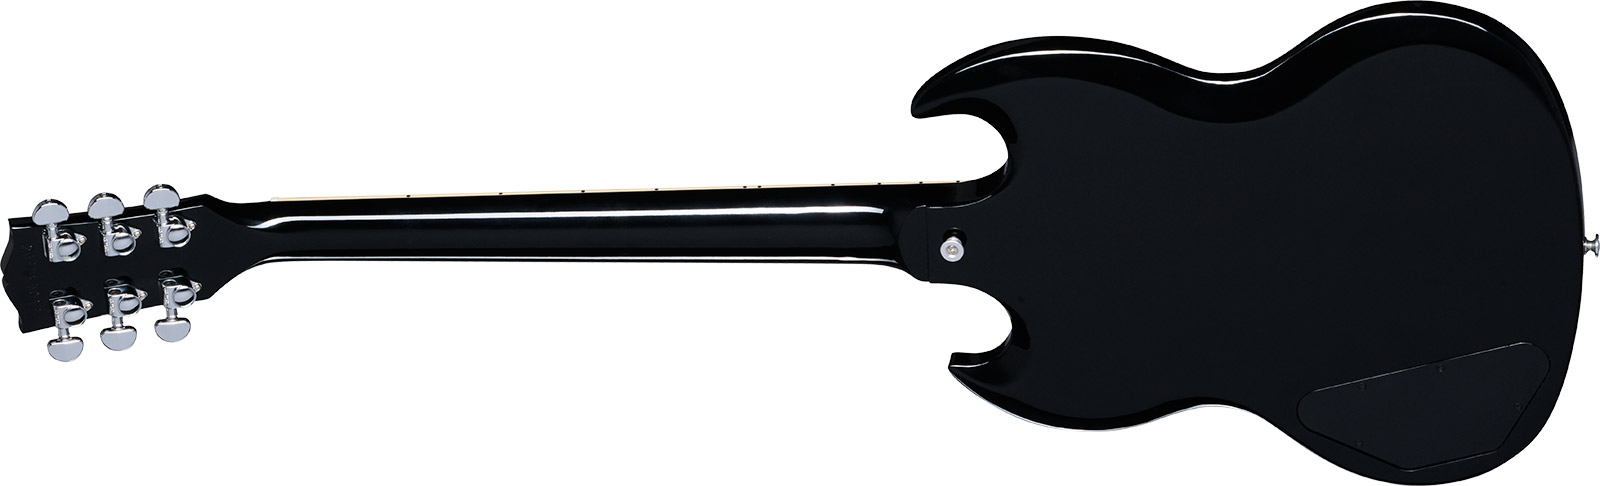 Gibson Sg Standard Custom Color 2h Ht Rw - Pelham Blue Burst - Guitarra eléctrica de doble corte. - Variation 1